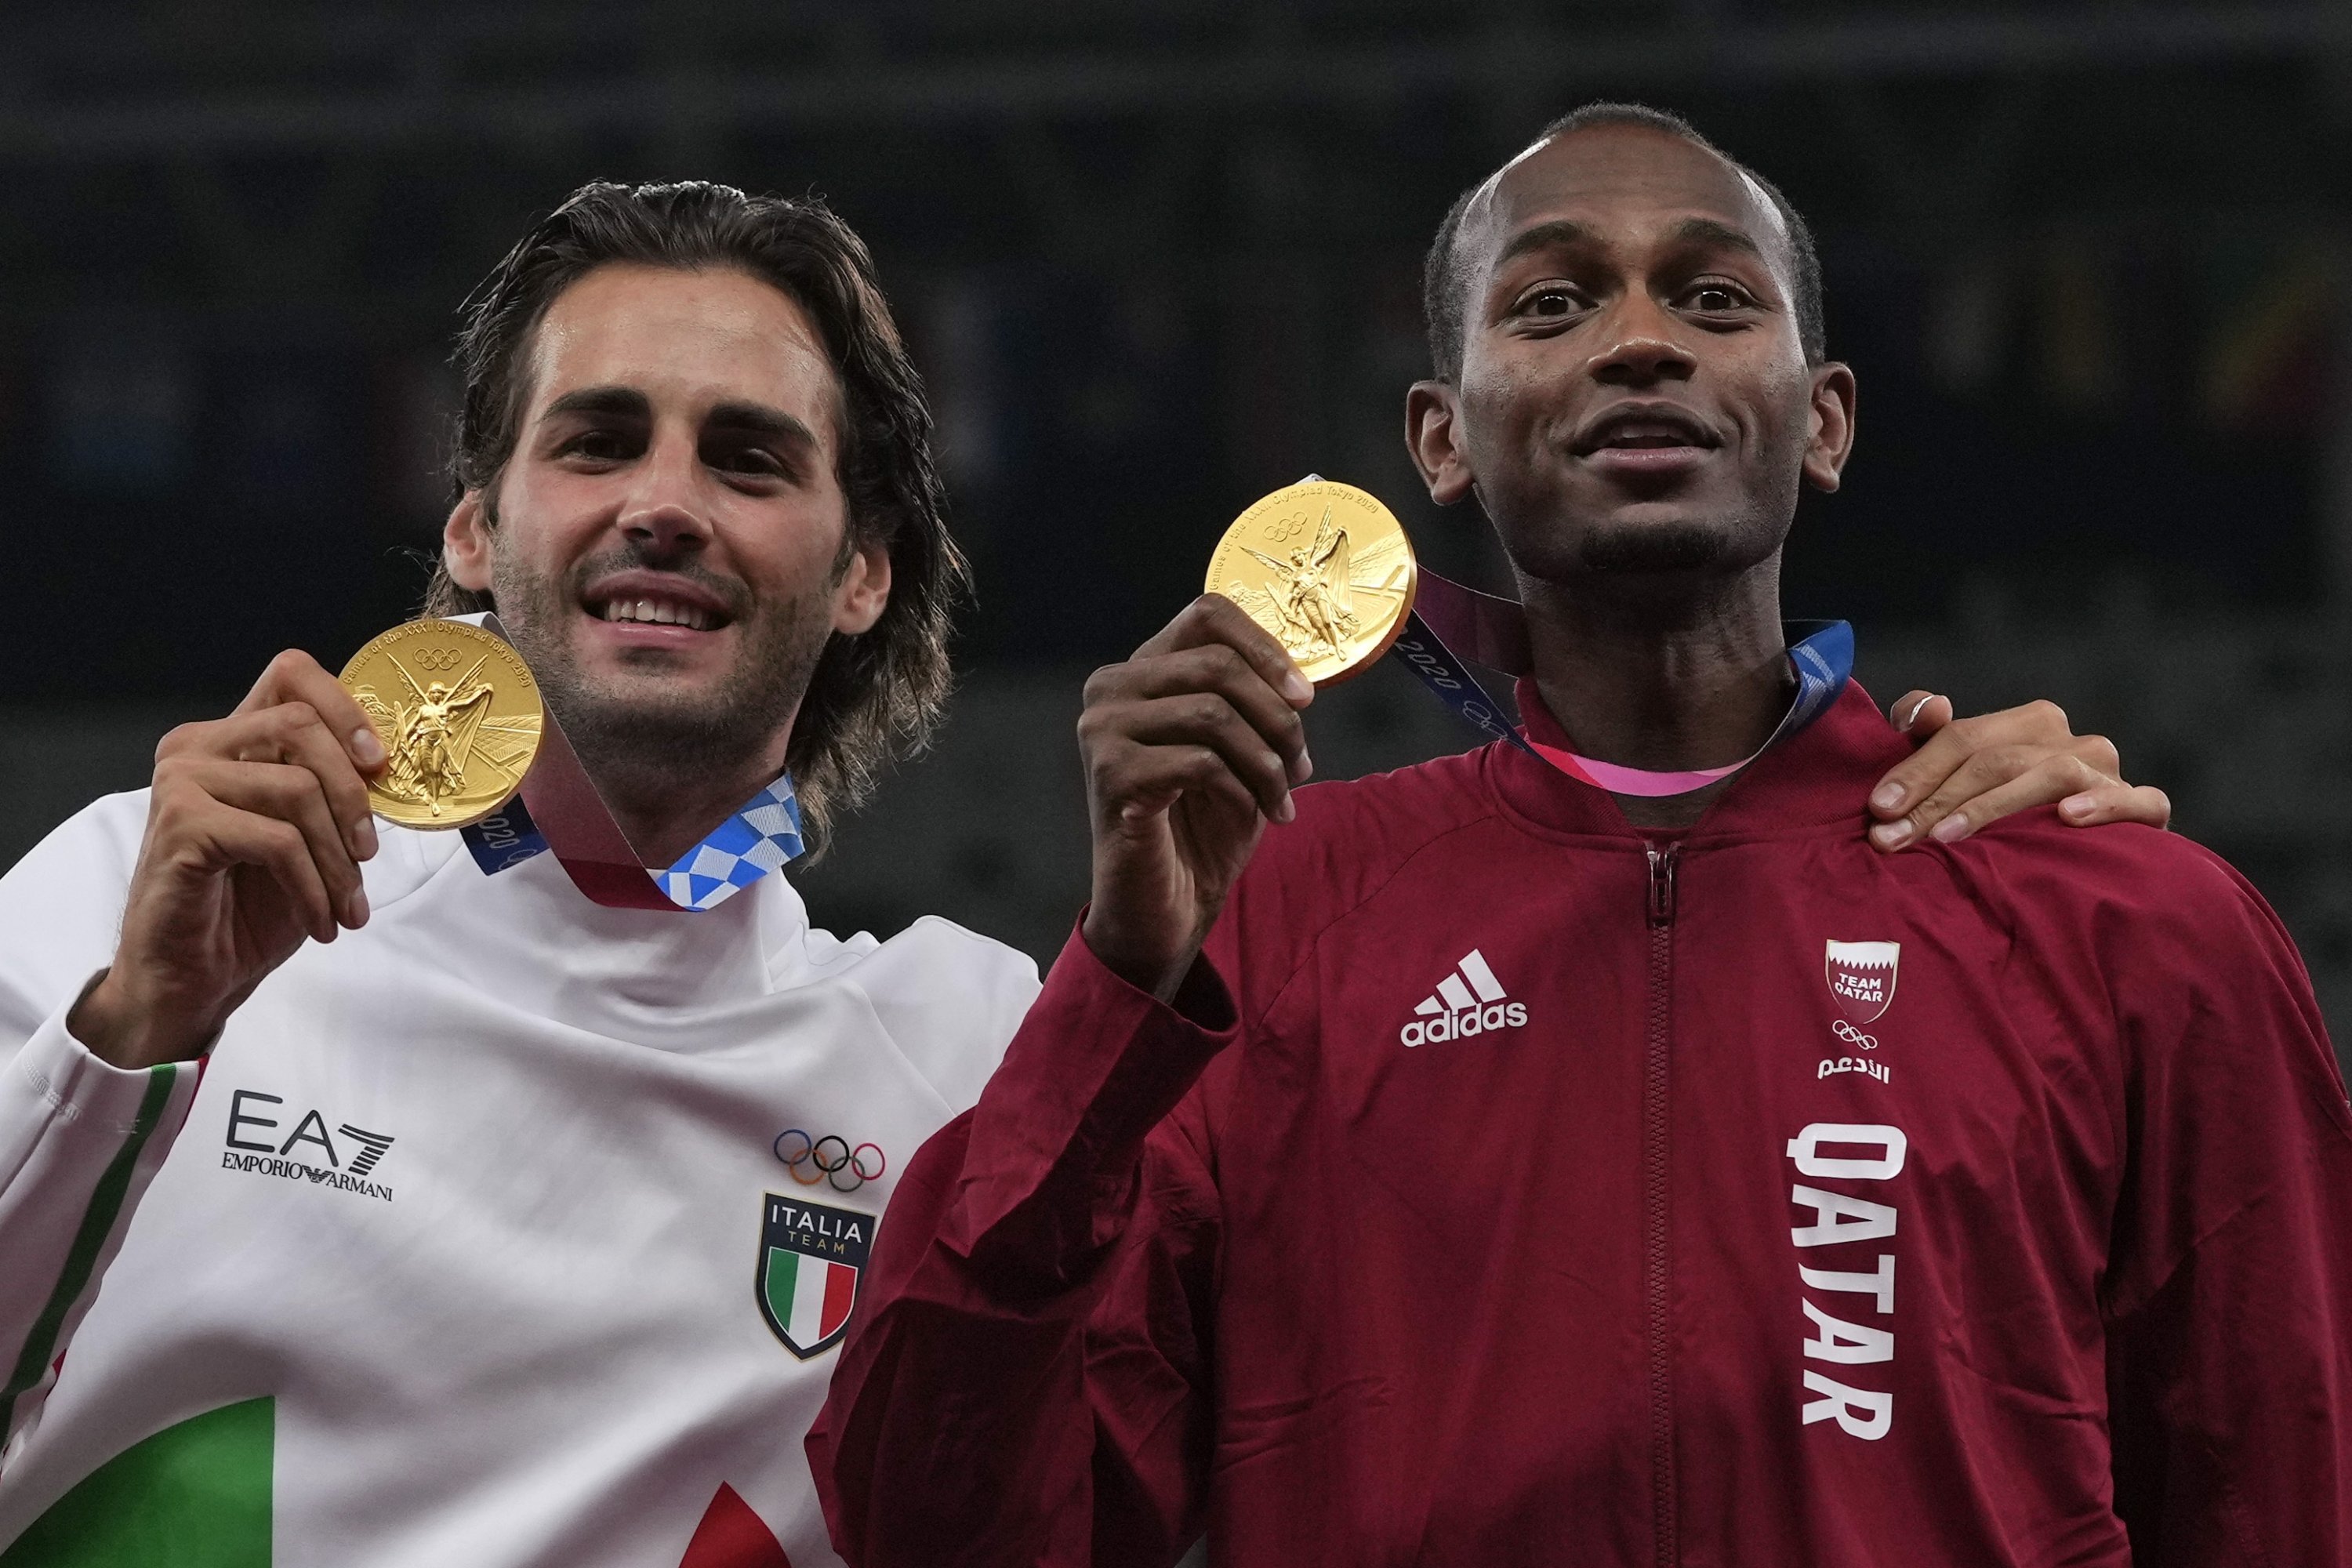 Atlet Italia Gianmarco Tamberi (kiri) dan Qatar Mutaz Barshim (kanan) setelah berbagi medali emas lompat tinggi di Olimpiade Tokyo 2020, Tokyo, Jepang, 2 Agustus 2021. (AP Photo)